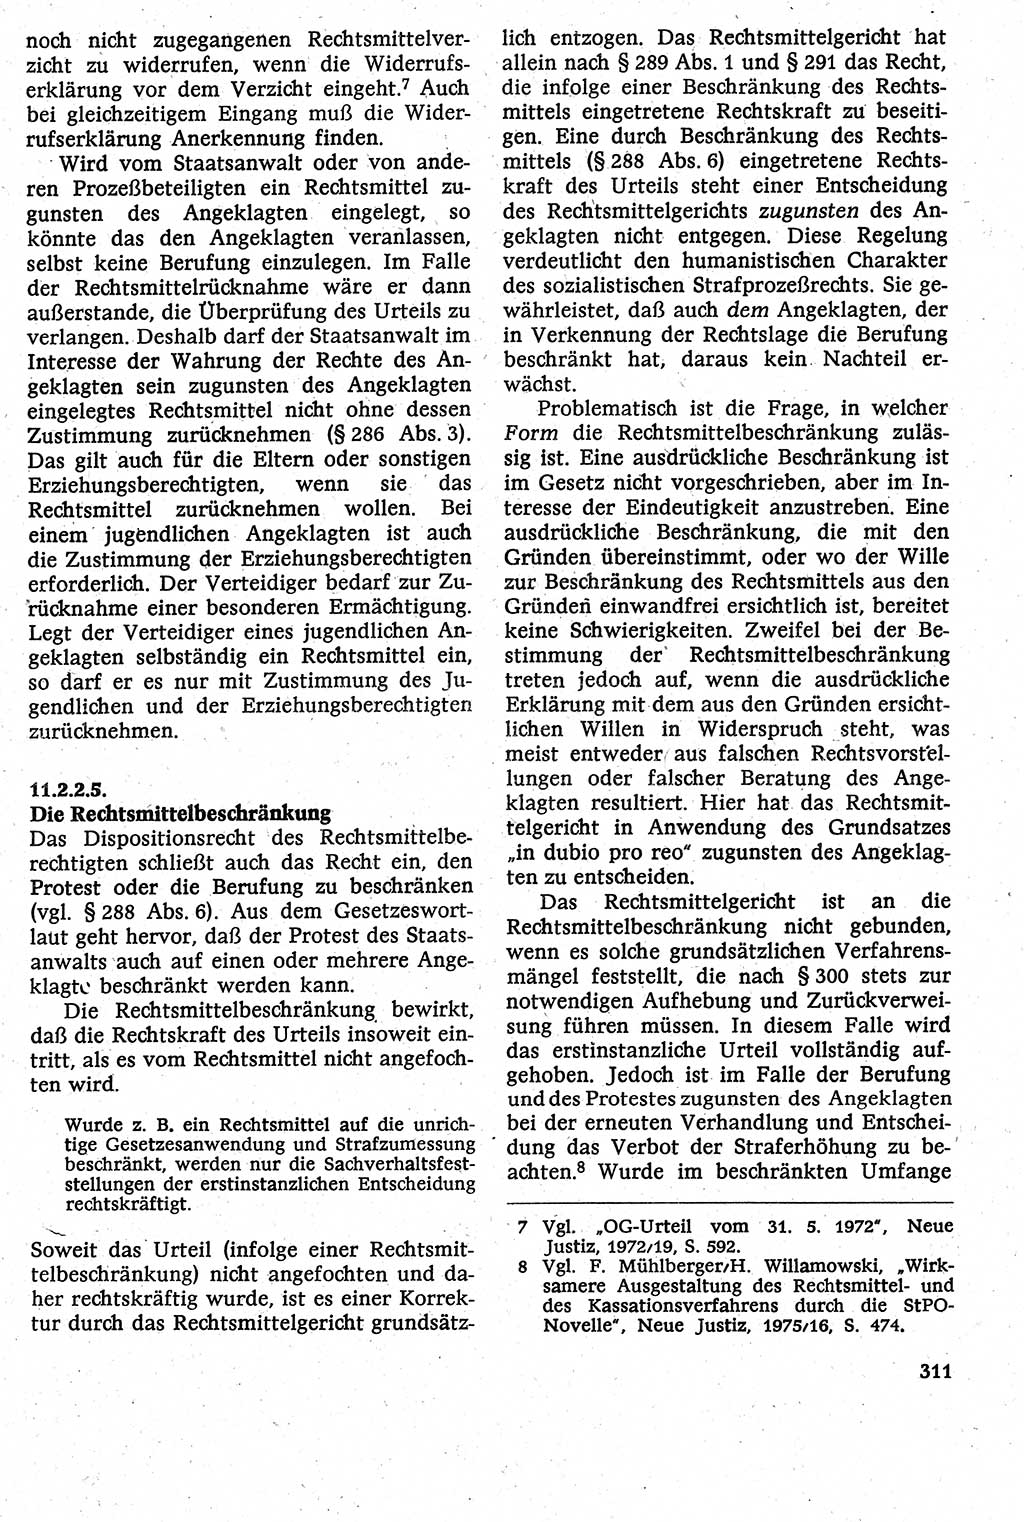 Strafverfahrensrecht [Deutsche Demokratische Republik (DDR)], Lehrbuch 1982, Seite 311 (Strafverf.-R. DDR Lb. 1982, S. 311)